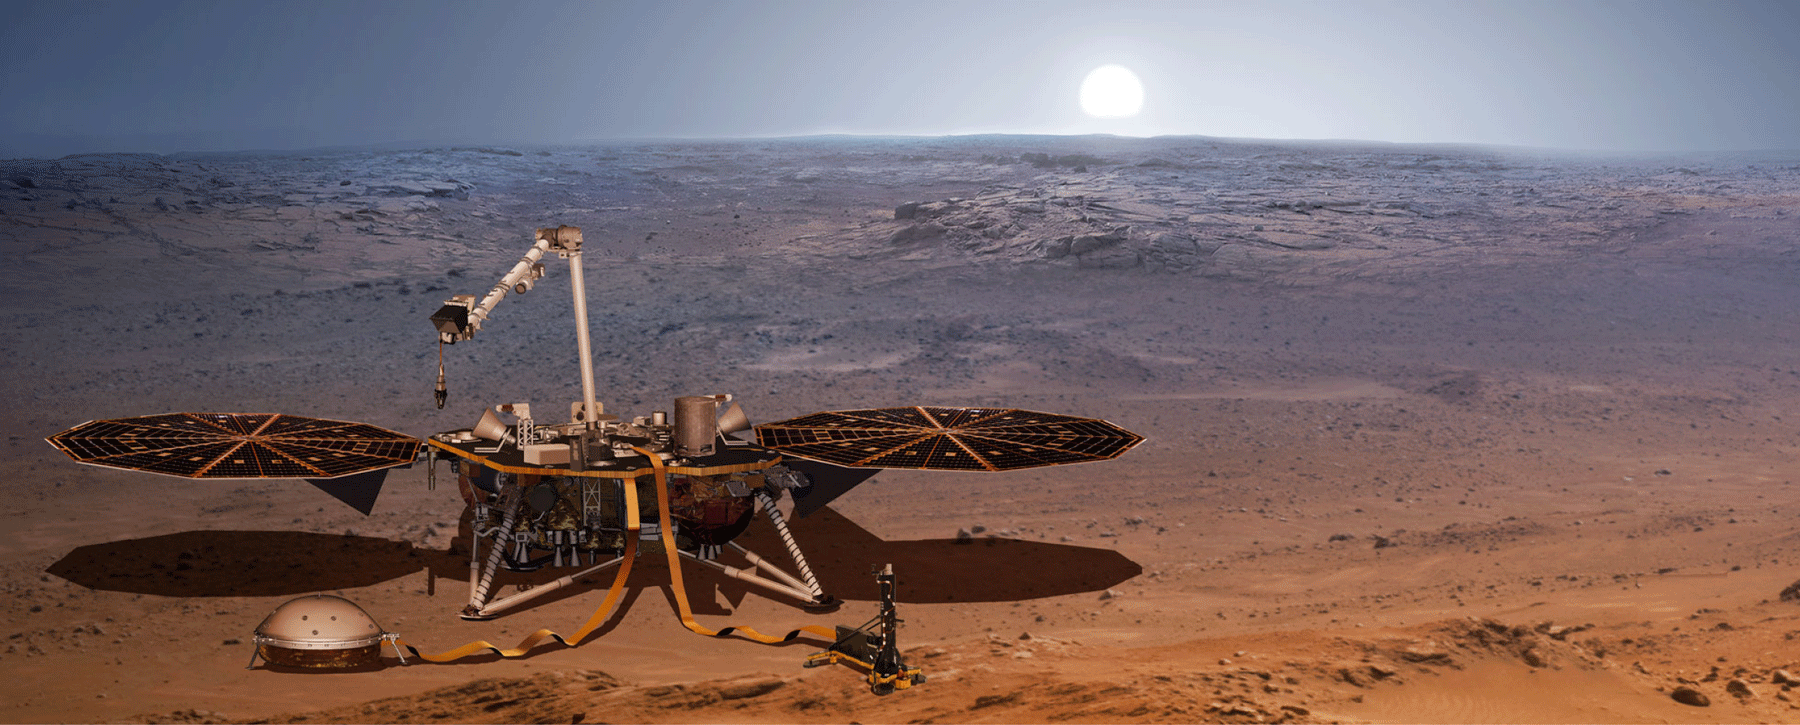 Mars InSight auf der Marsoberfläche (Fotomontage)